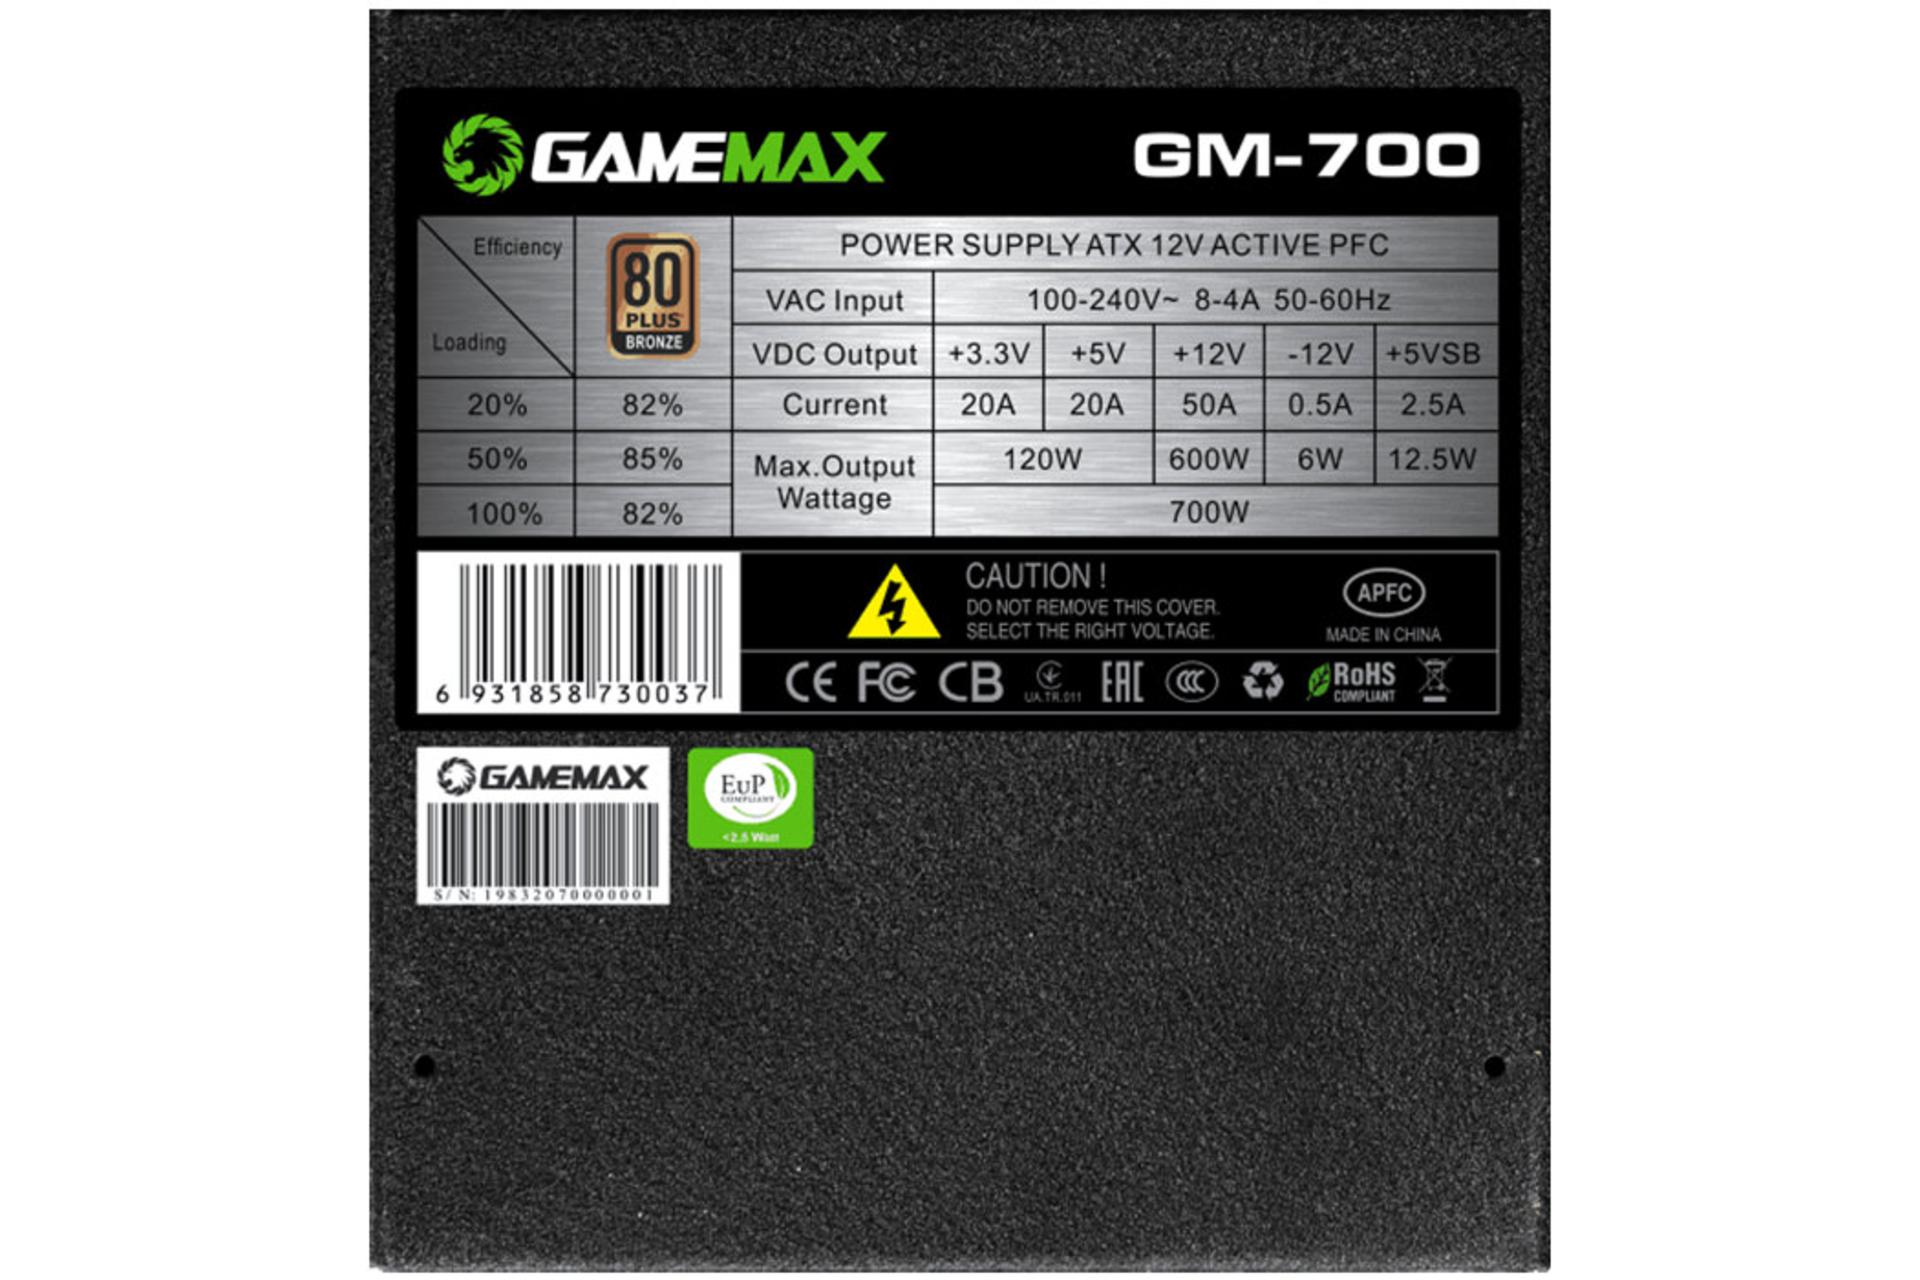 پاور کامپیوتر گیم مکس GM-700 با توان 700 وات برچسب توضیحات